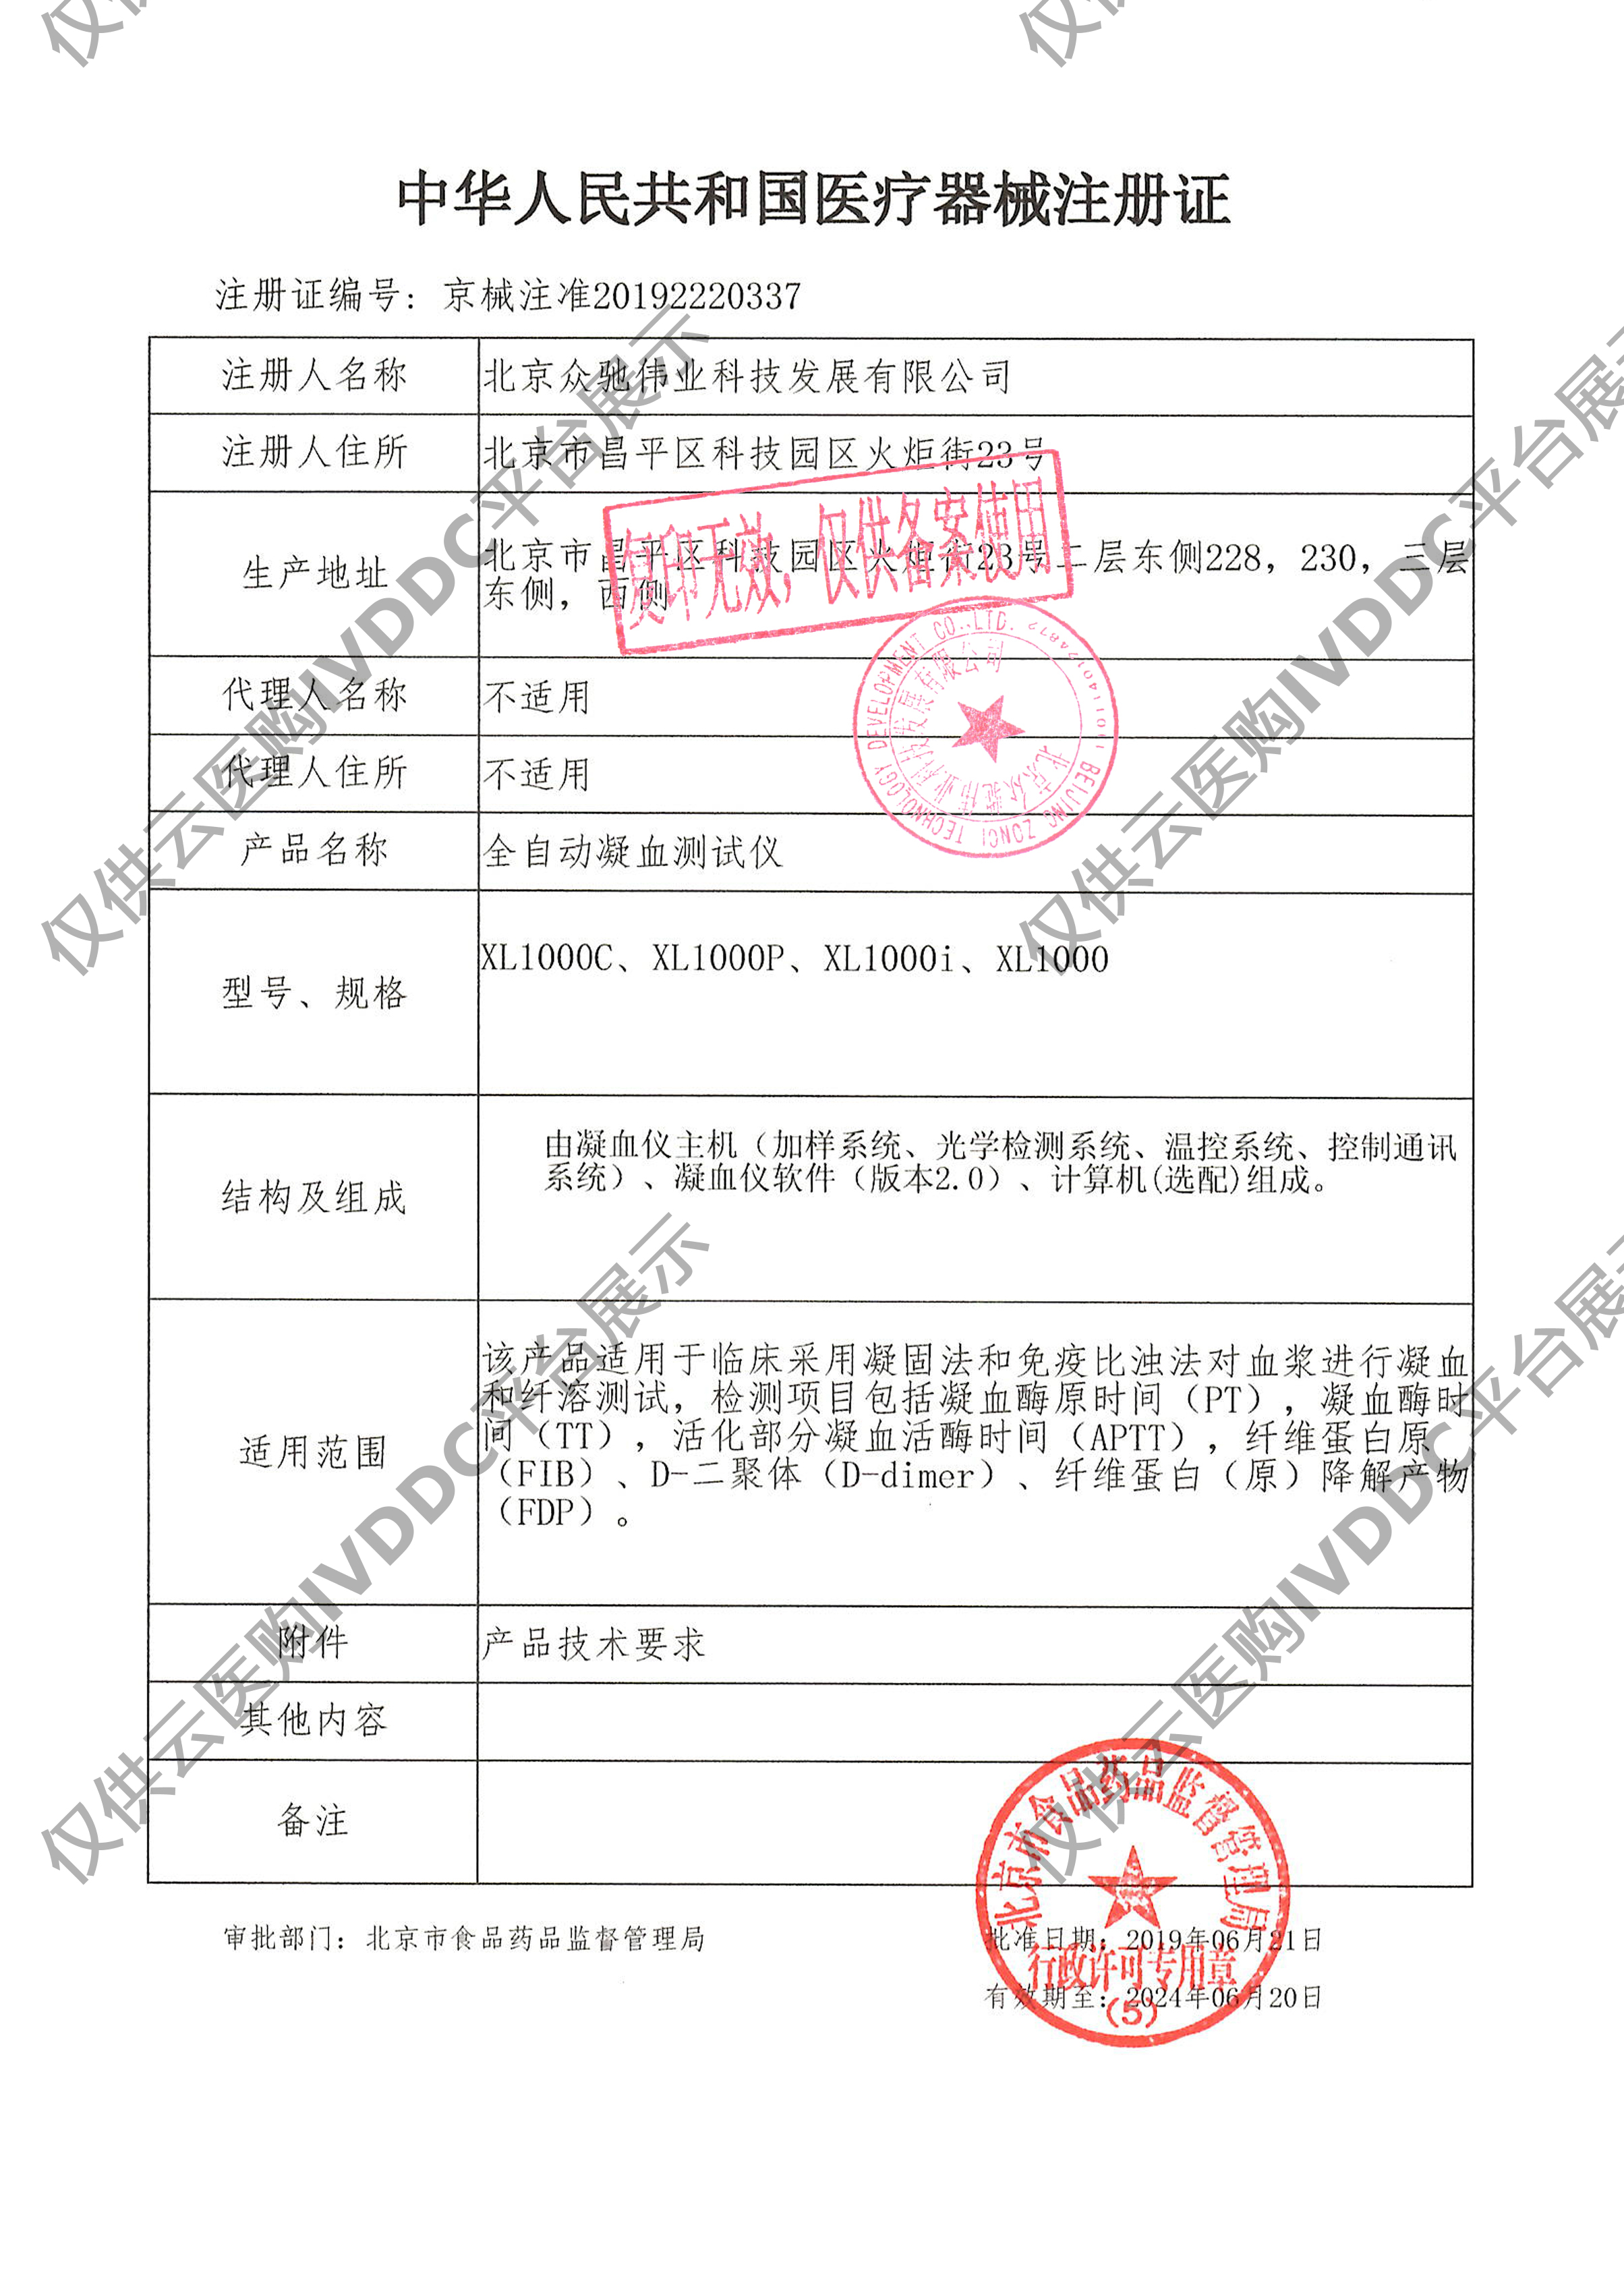 【众驰伟业】全自动凝血分析仪 XL-1000e注册证